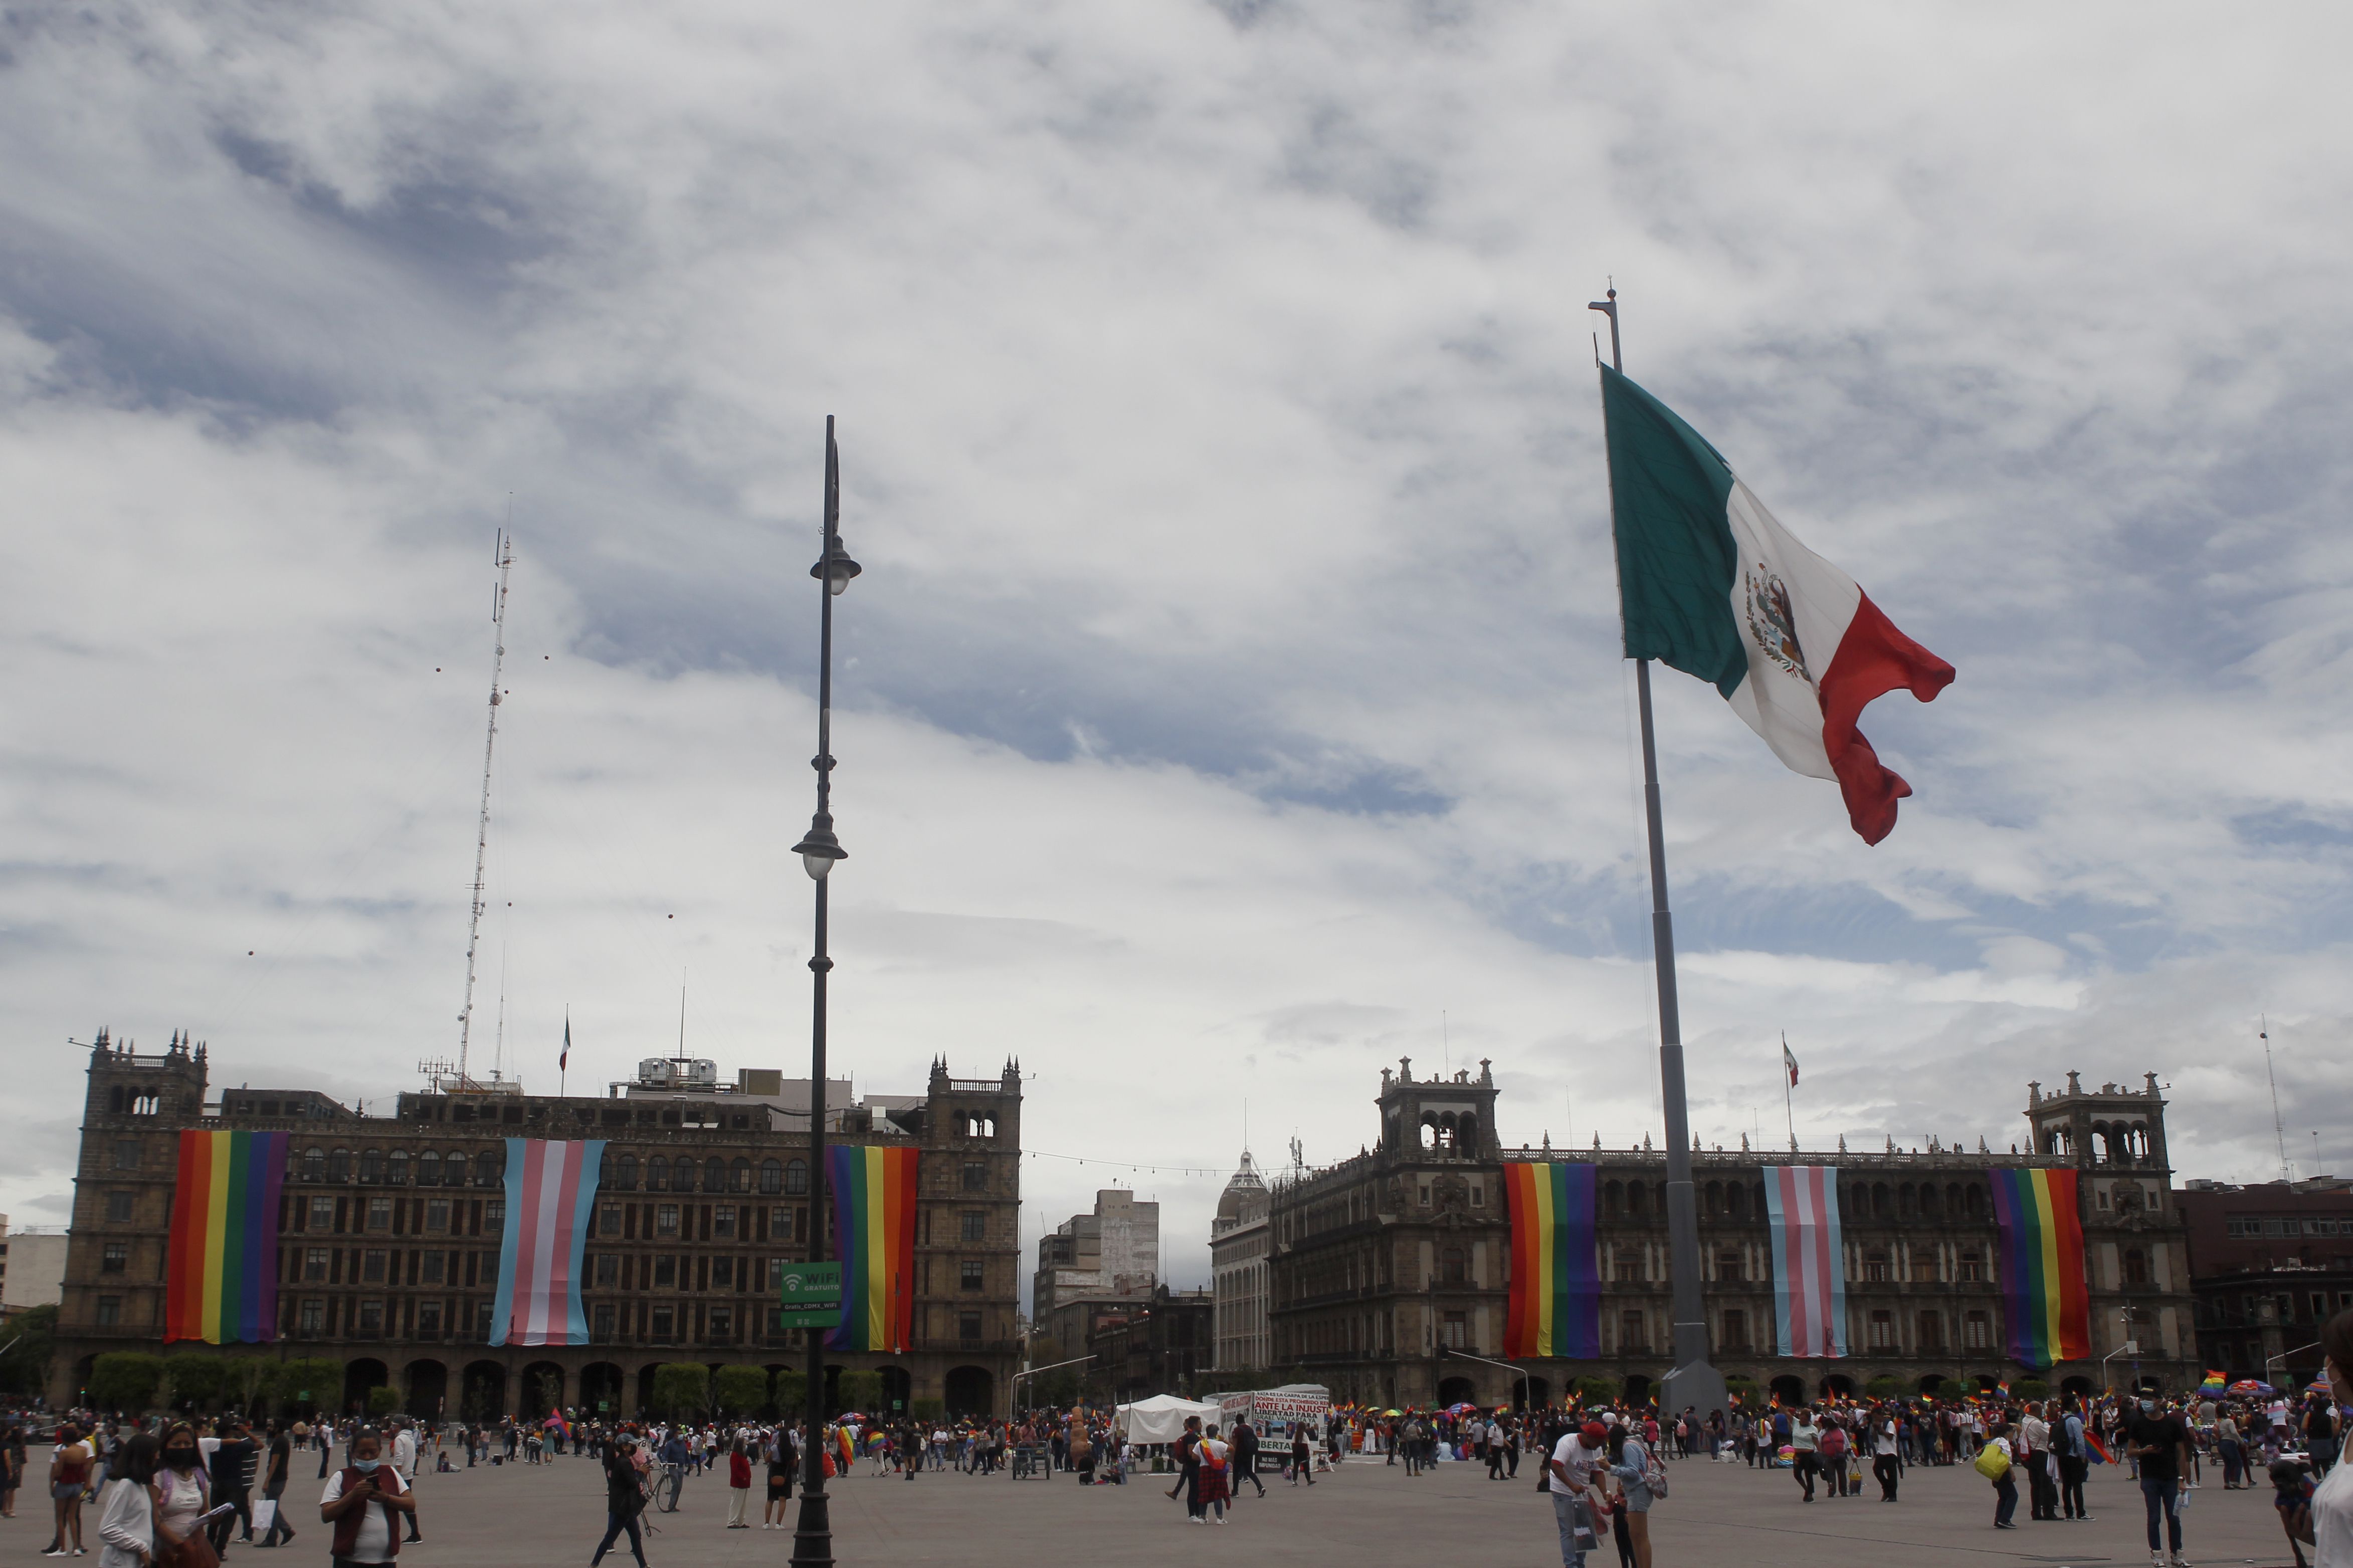 Marcha del Orgullo LGBTTTIQ en Ciudad de México, que tuvo como recorrido del Ángel de la Independencia al Zócalo capitalino. Junio 26, 2021.
Foto: Karina Herández / Infobae 